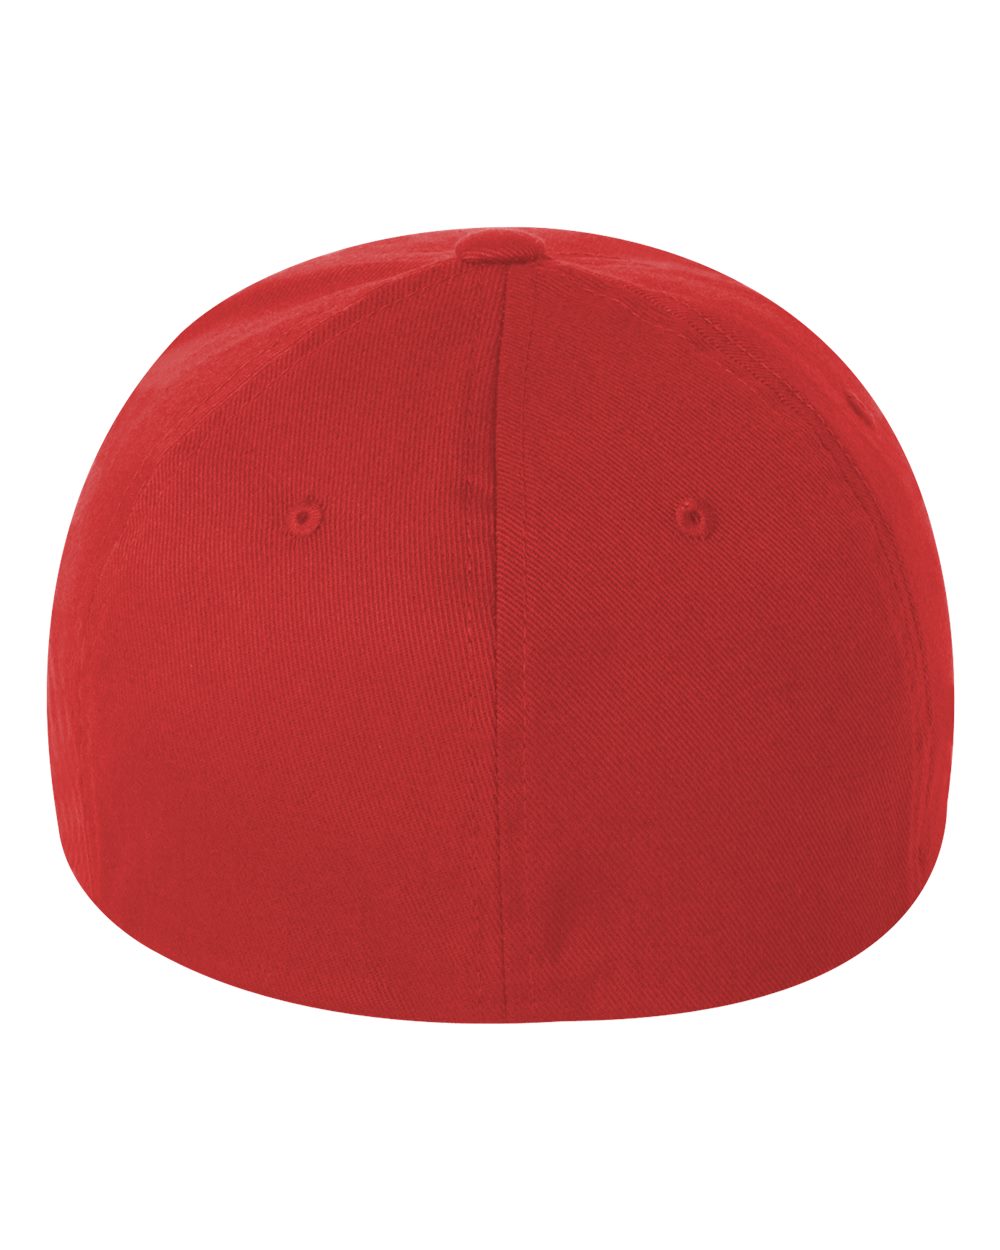 Flexfit Cotton Blend Cap 6277 #color_Red